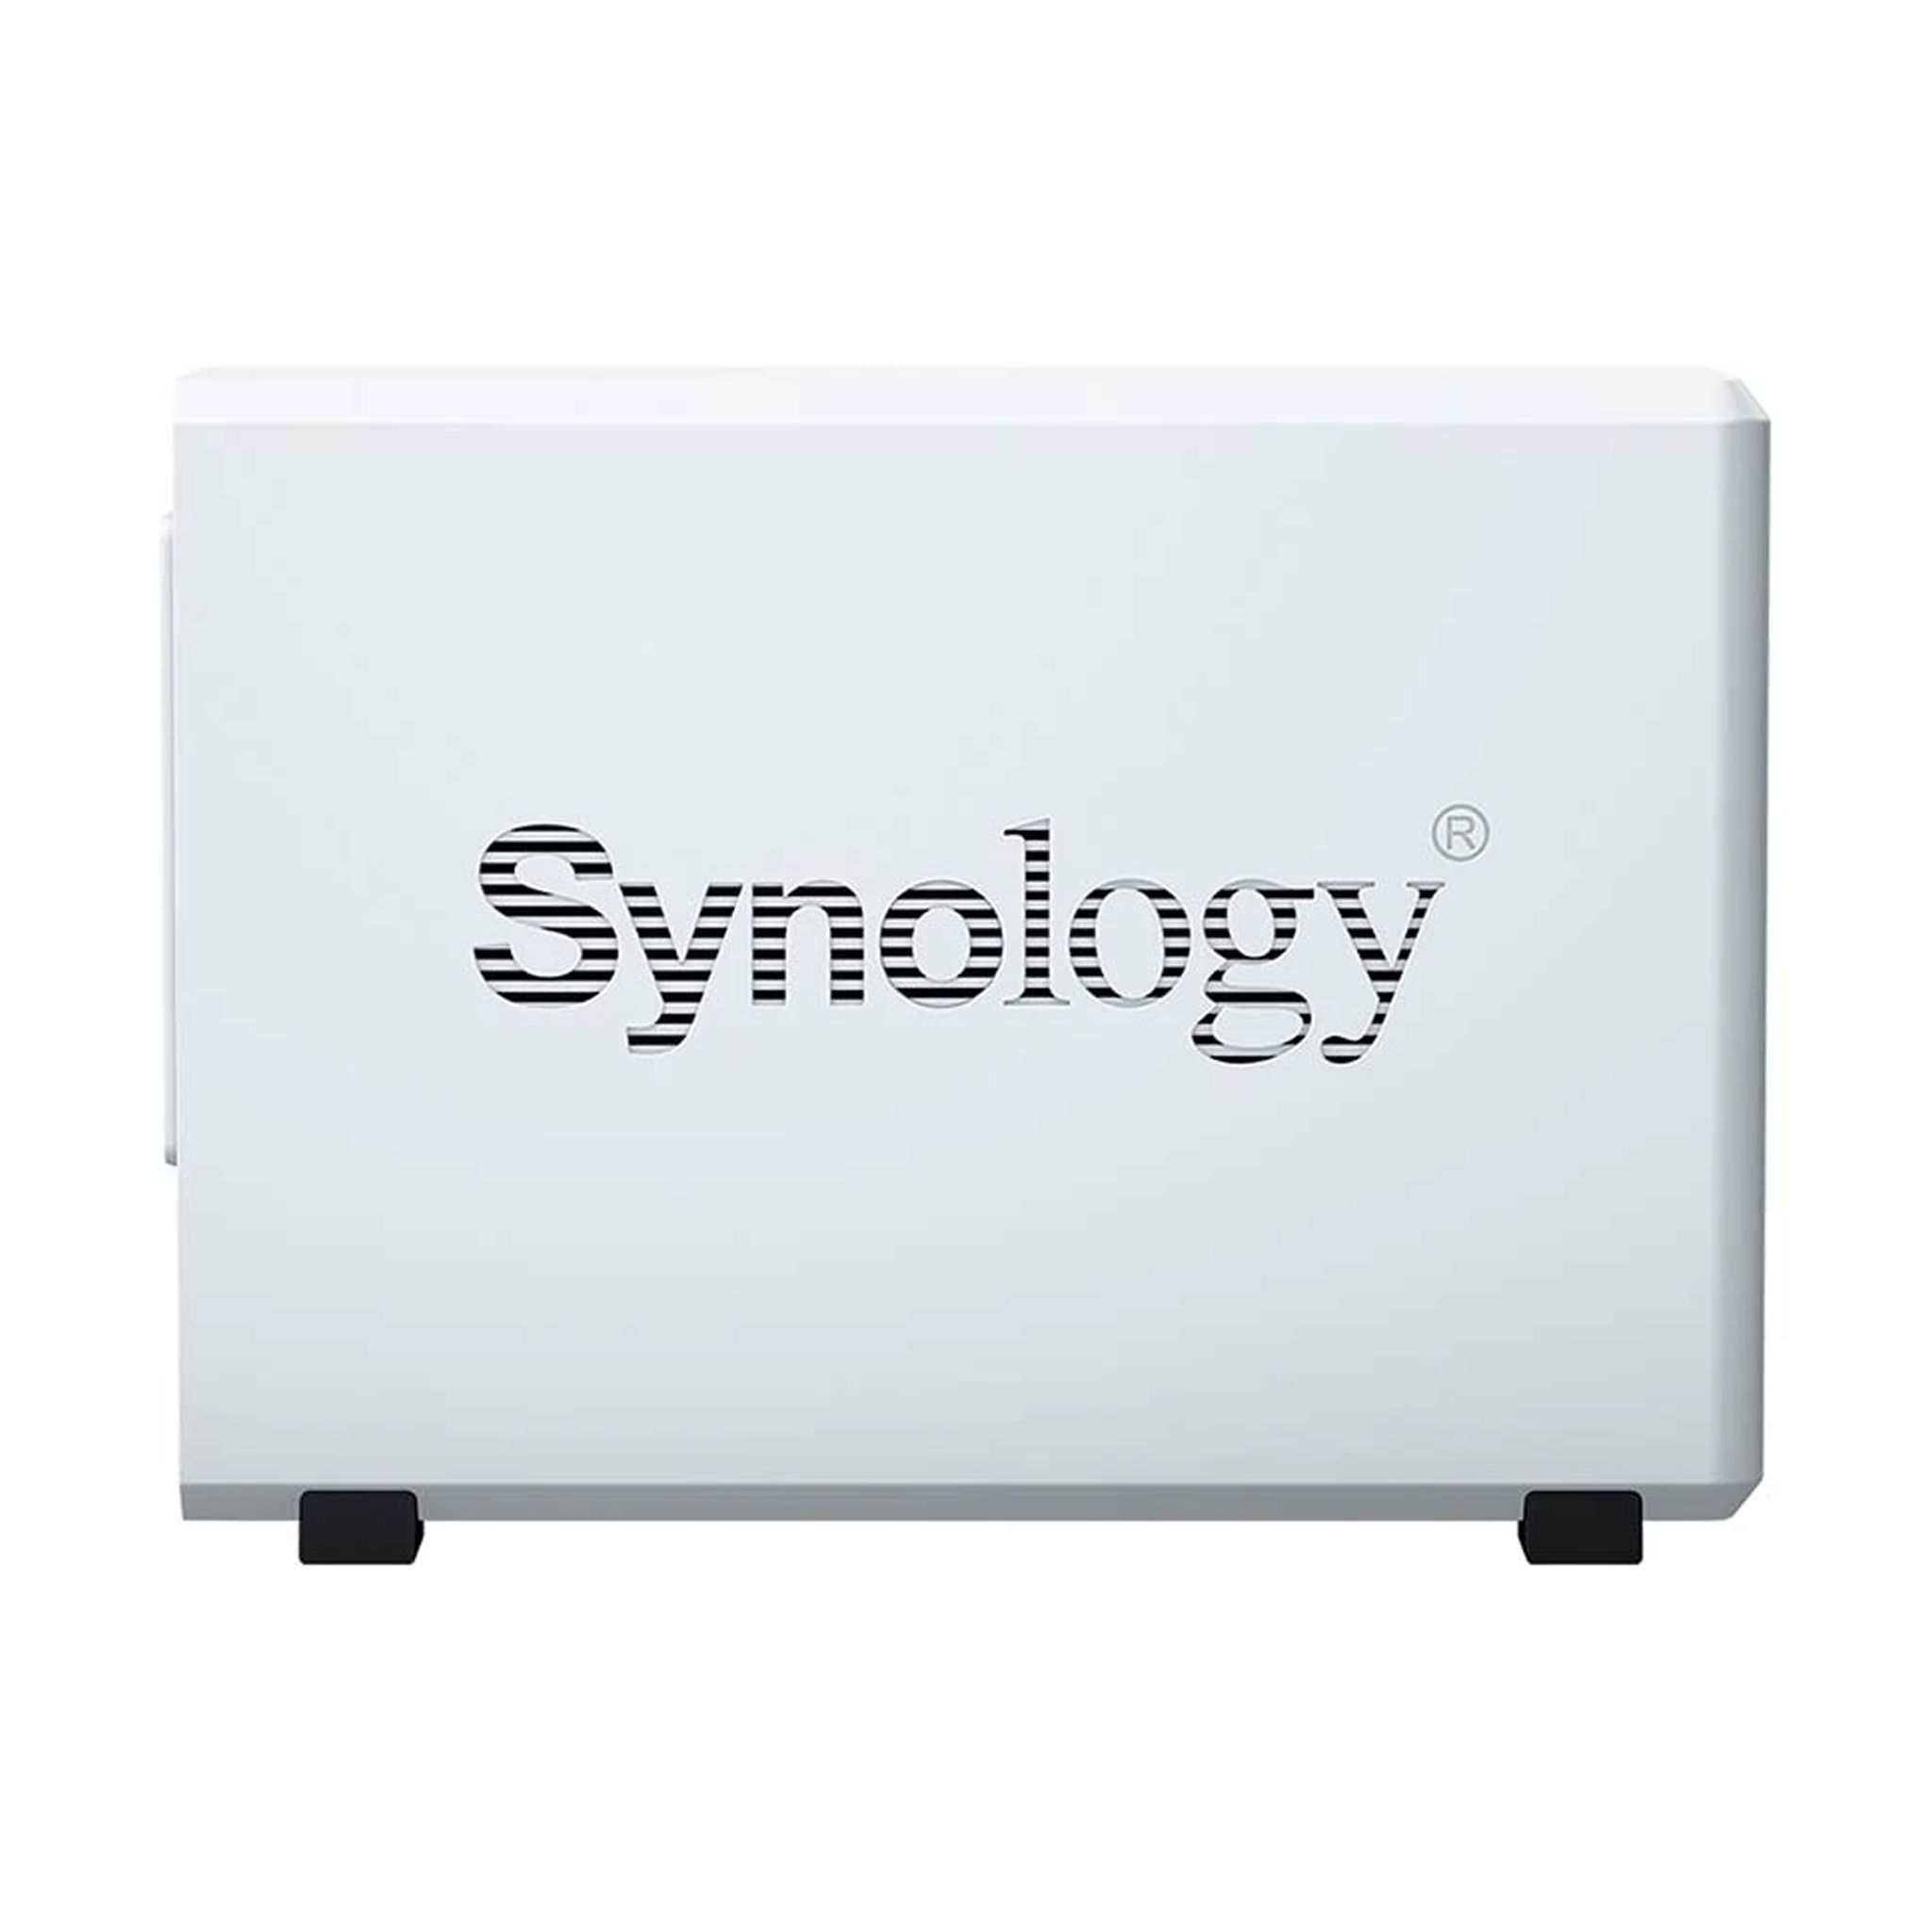 Thiết bị lưu trữ mạng NAS Synology DS223J | kết nối LAN/USB 3.2 Gen 1